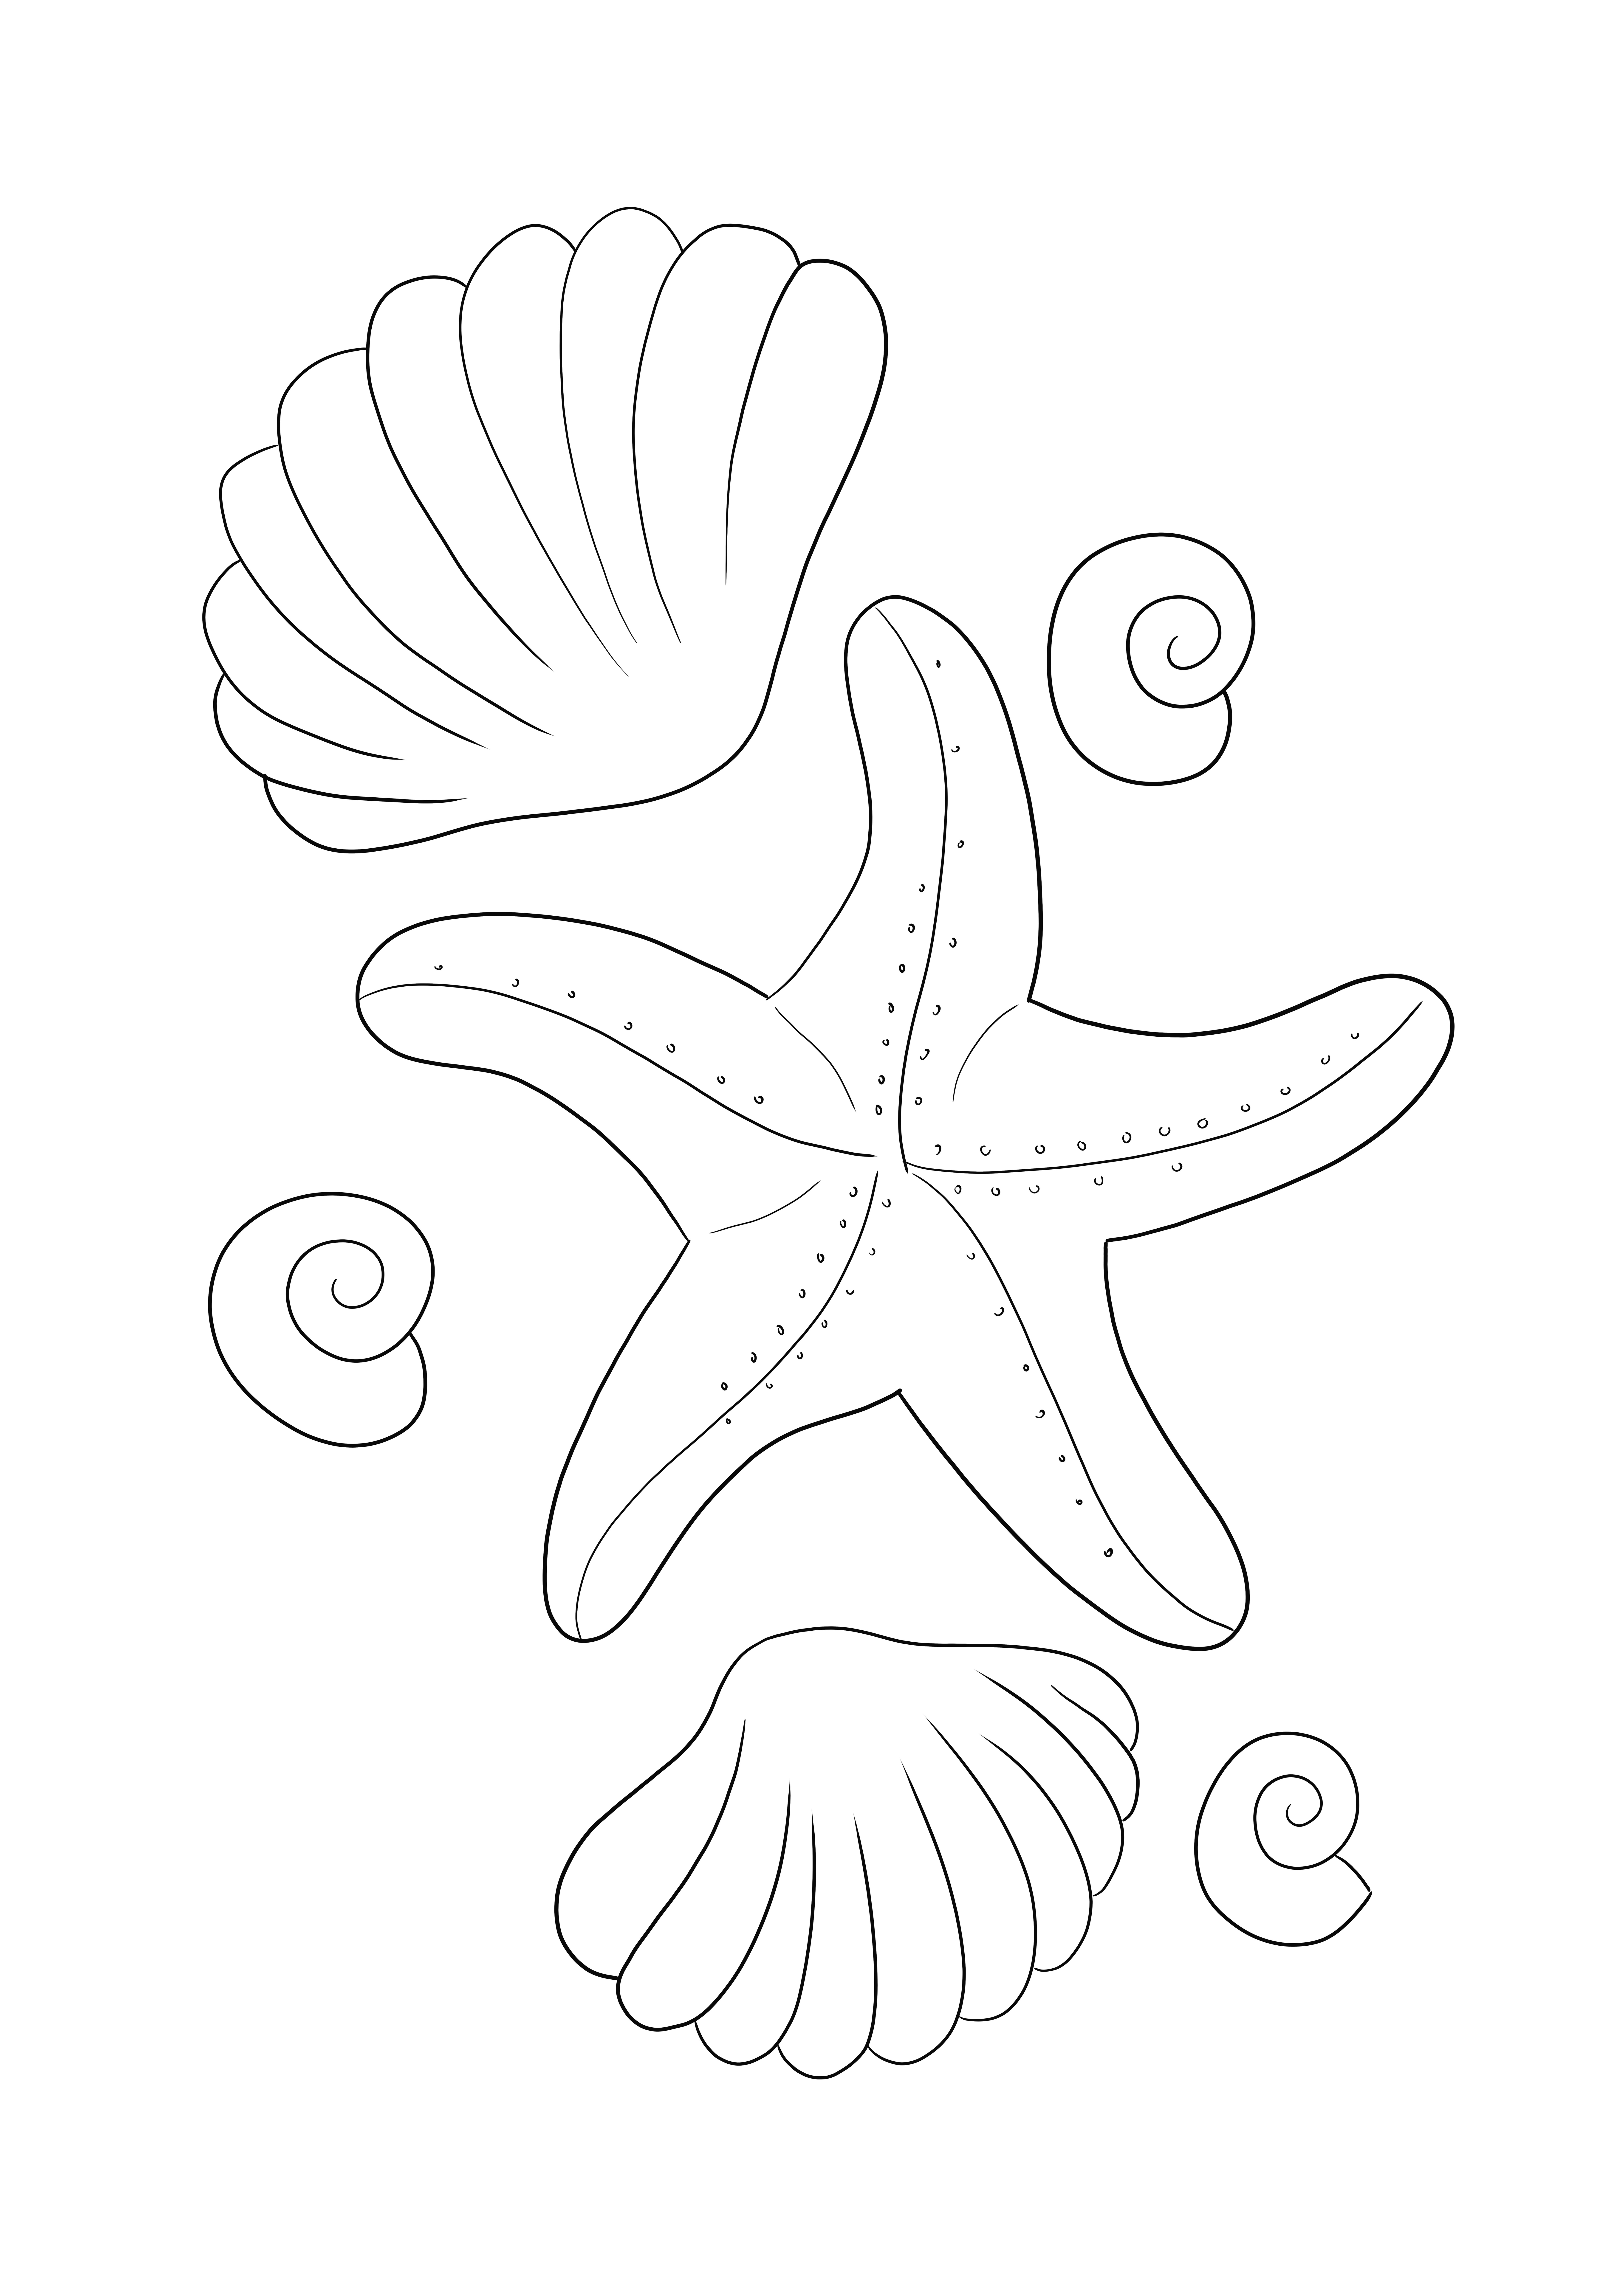 Starfish and Shells värityskuva ilmaiseksi tulostamista ja lataamista varten